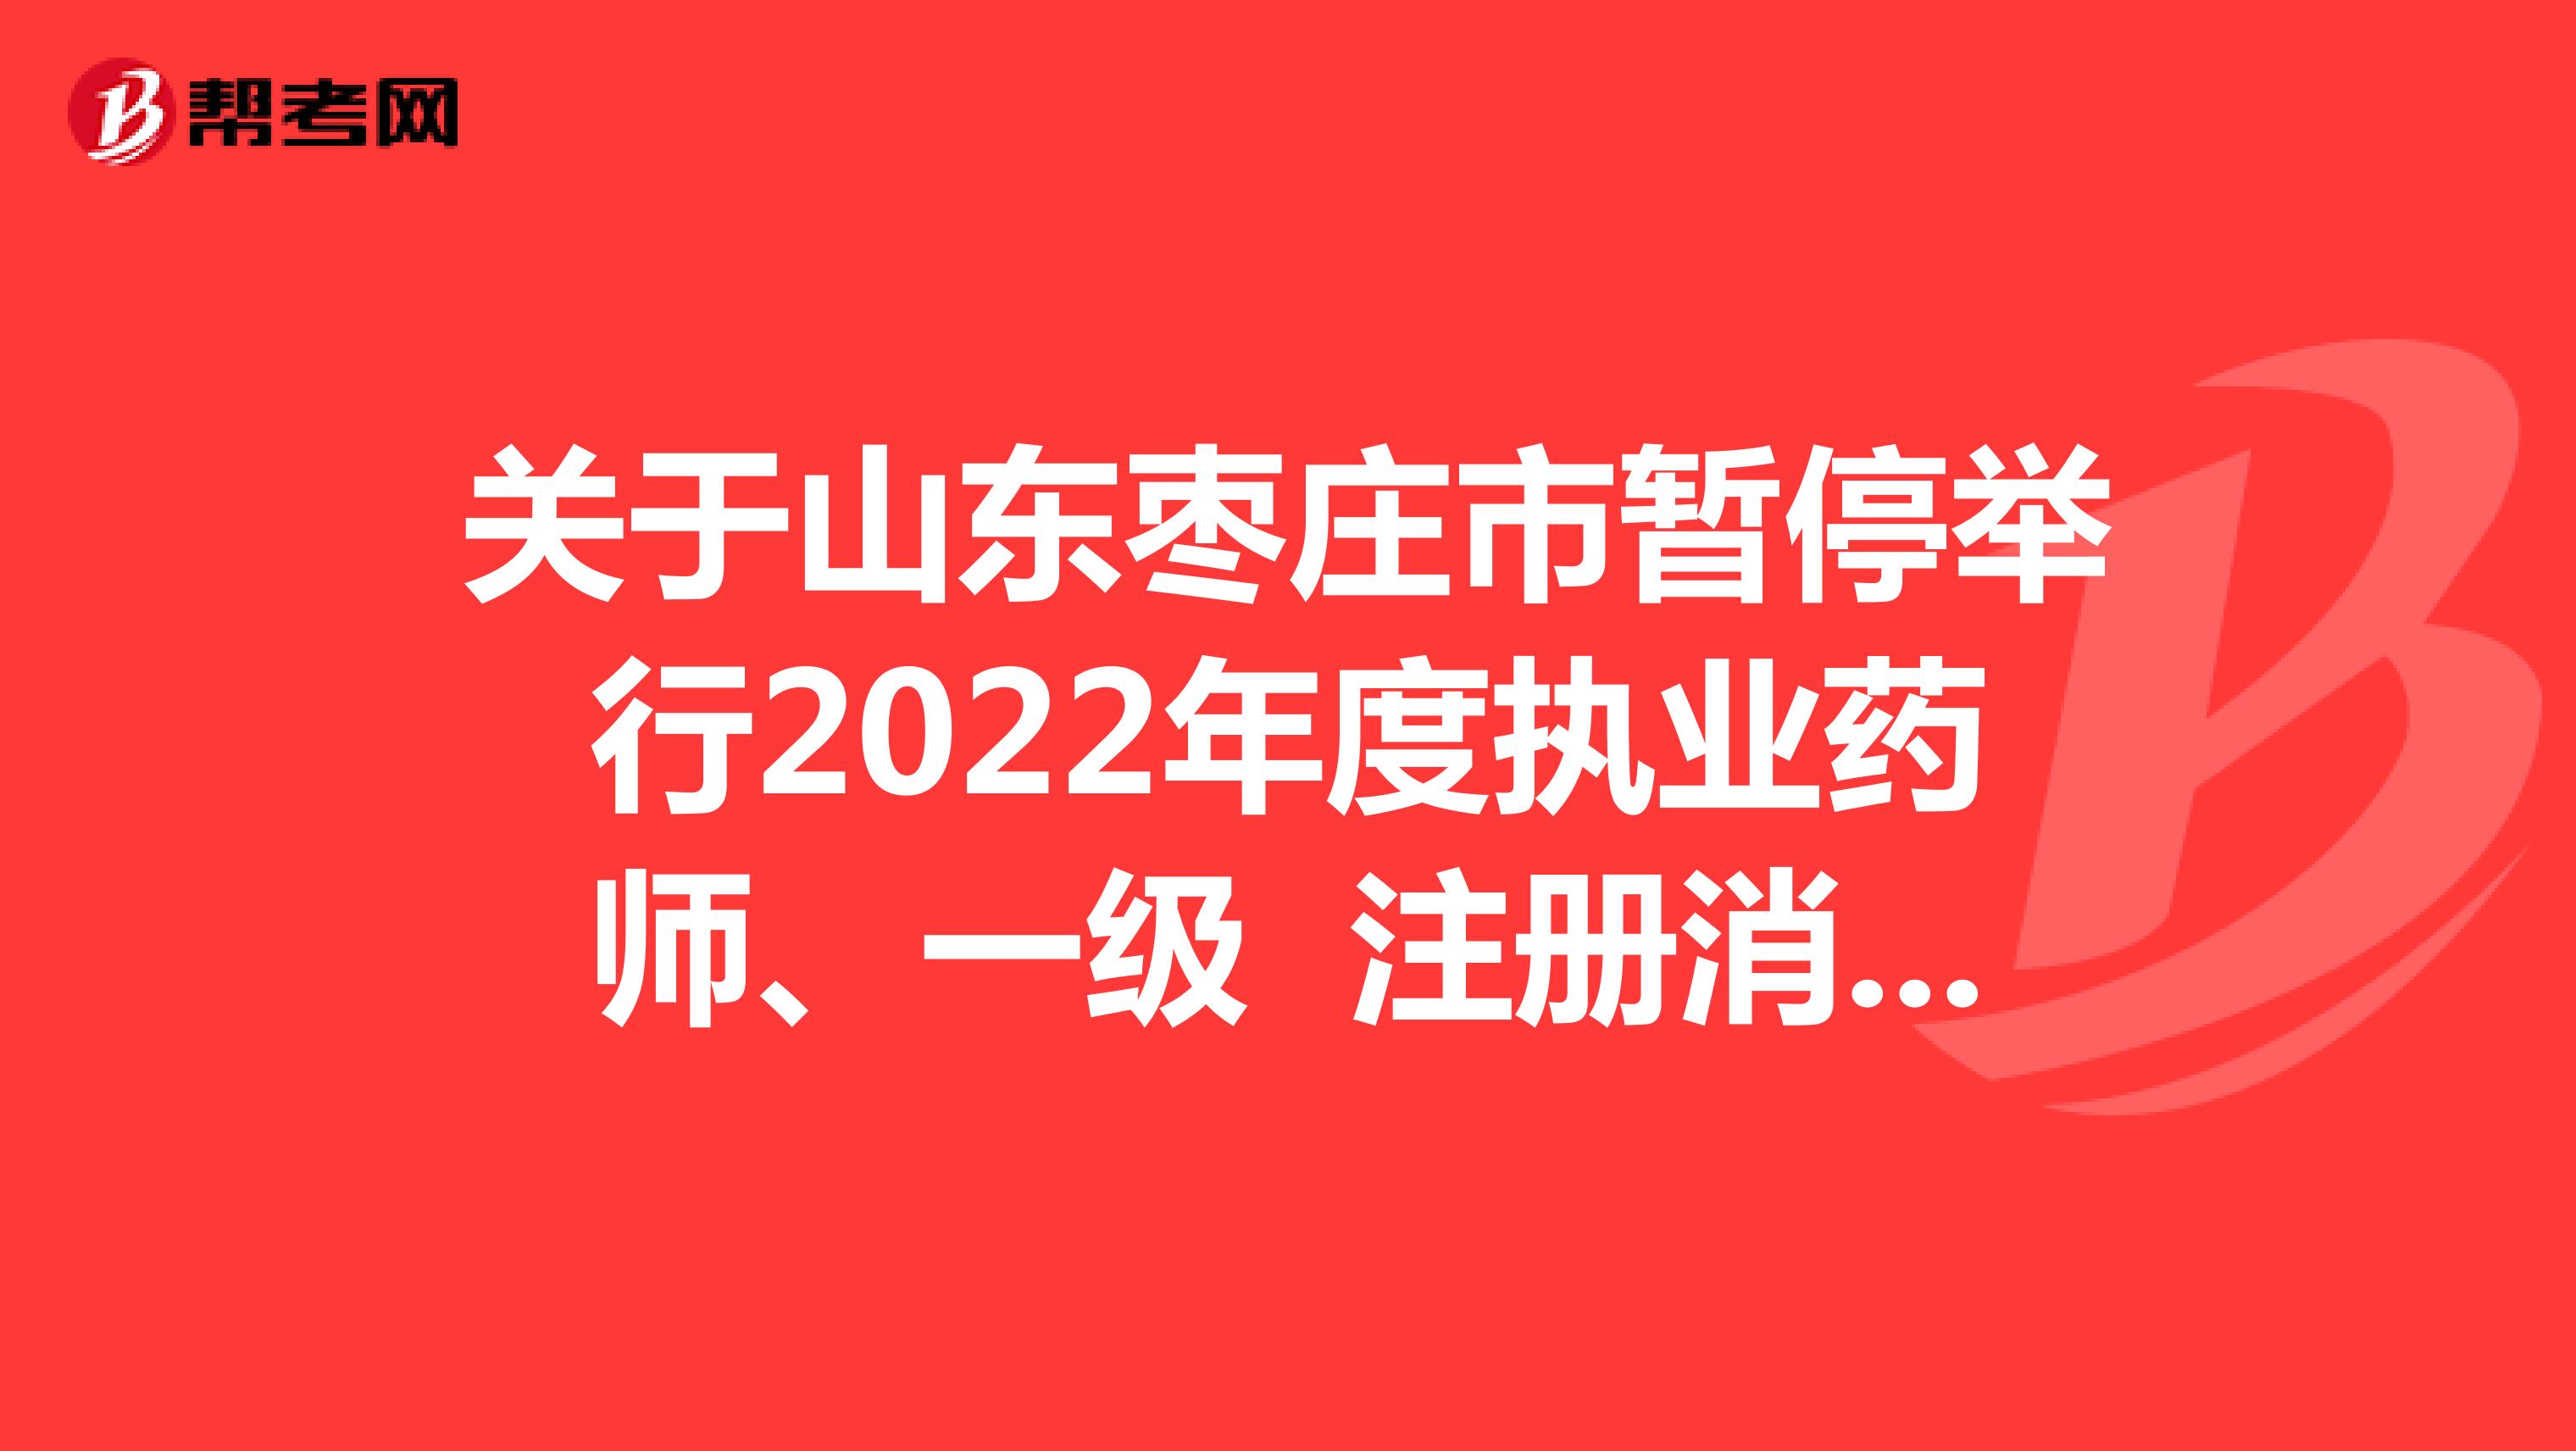 关于山东枣庄市暂停举行2022年度执业药师、一级 注册消防工程师、翻译、计算机技术与软件 资格考试的公告